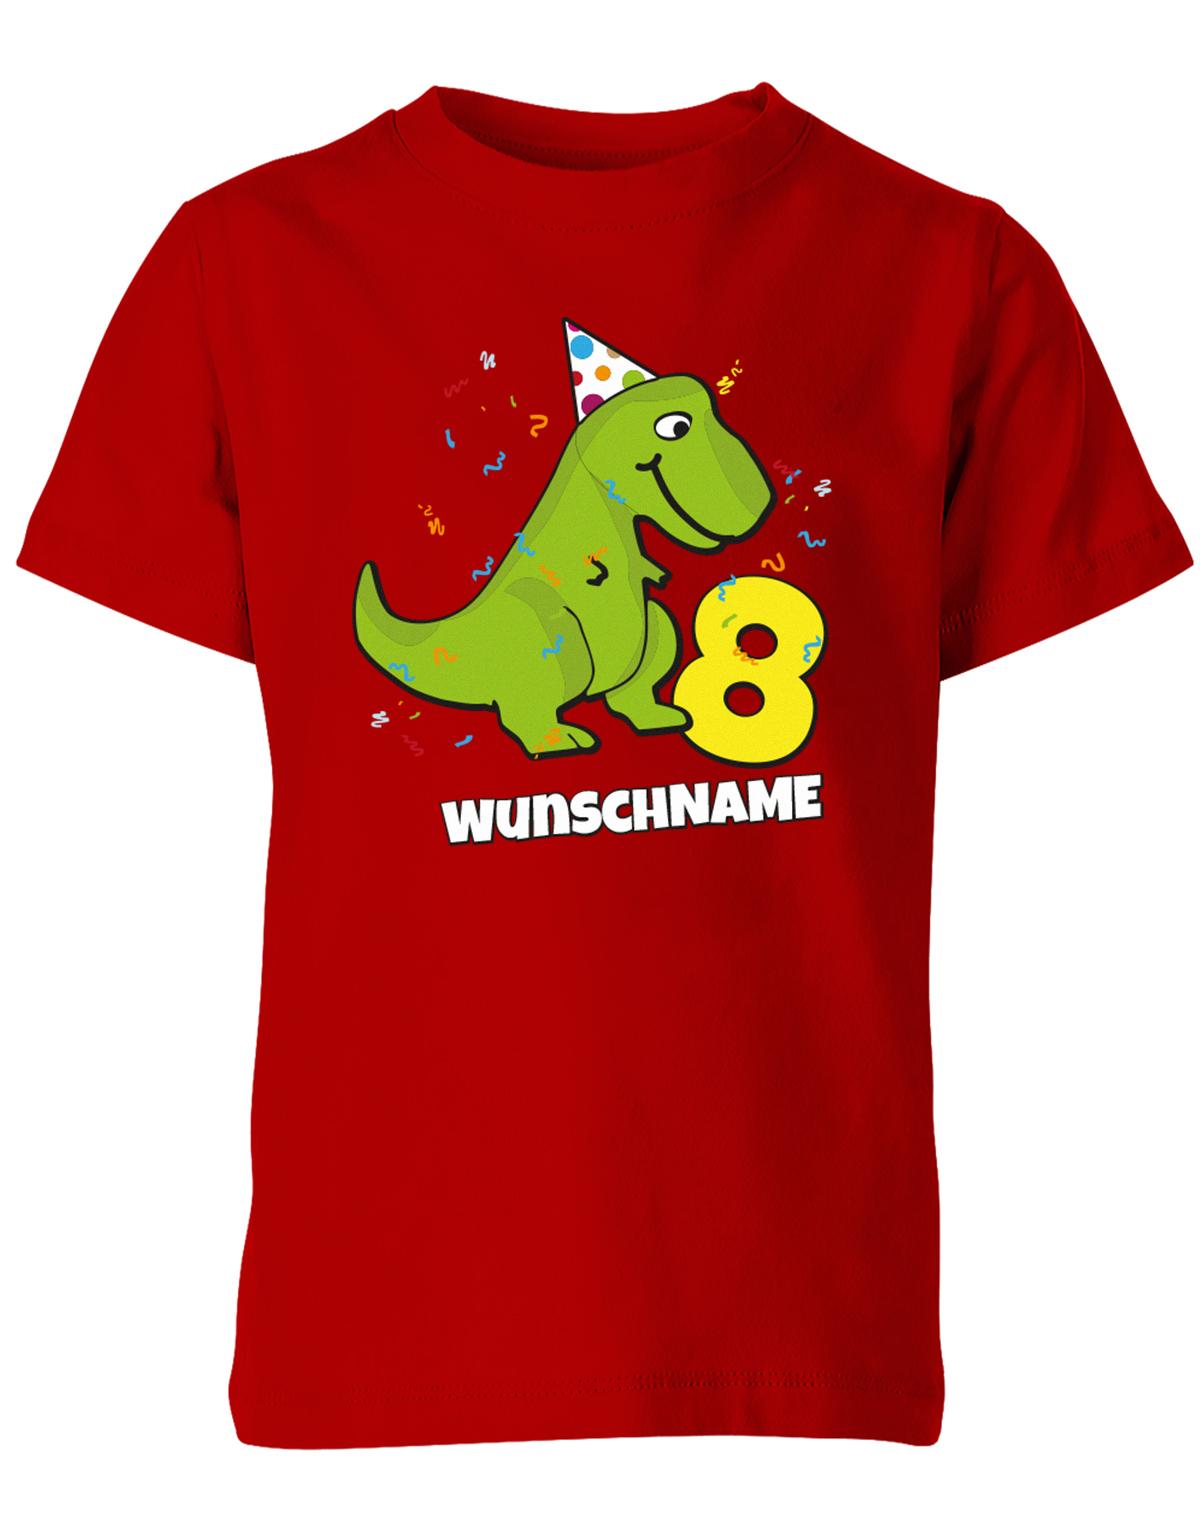 ich-bin-8-Dinosaurier-t-rex-wunschname-geburtstag-kinder-shirt-rot